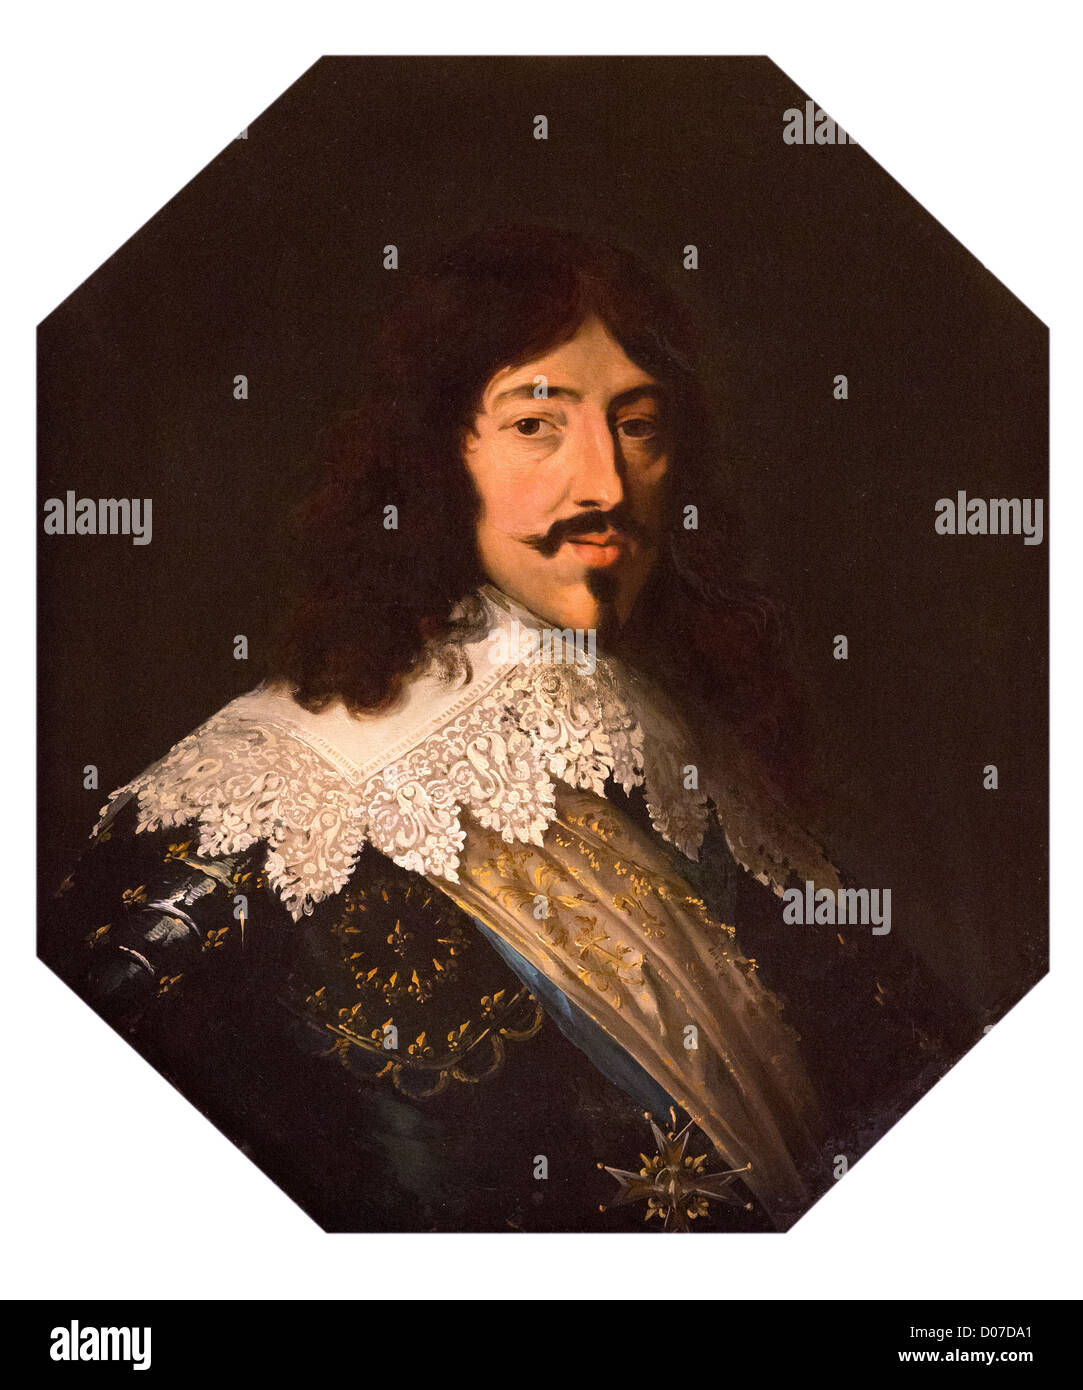 Portrait Of King Louis X I I I, King Of France As A Boy Fleece Blanket by  Mountain Dreams - Pixels